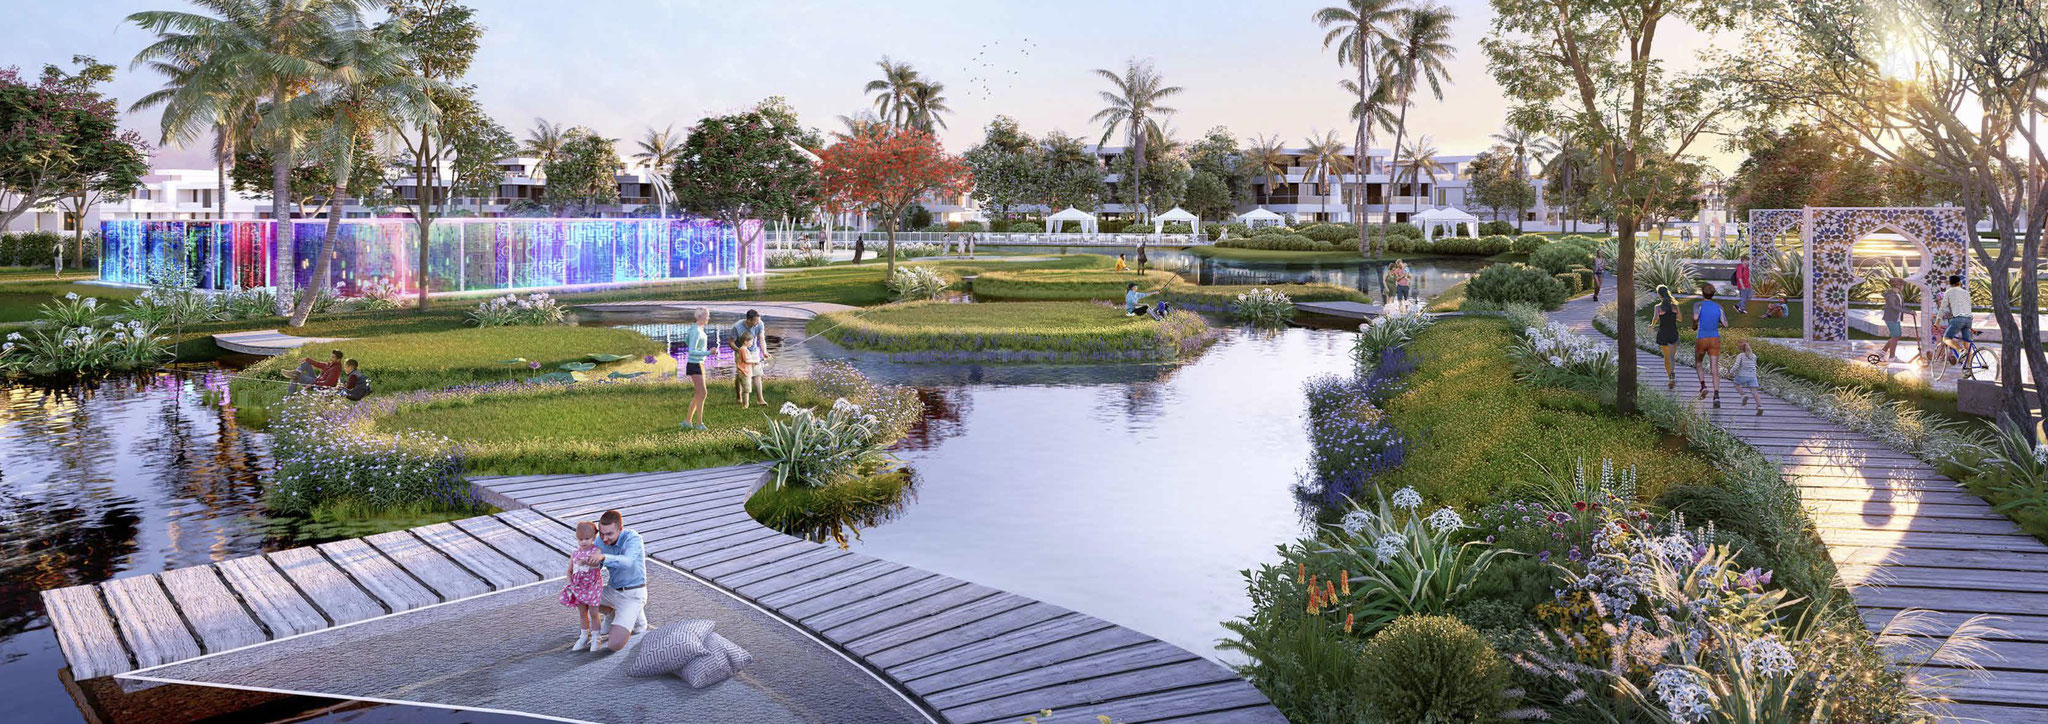 Achat et vente immobilier VILLAS DE LUXE MOROCCO by DAMAC LAGOONS à DUBAILAND DUBAI by JINVESTY agence immobilière DUBAI DIRECT PROMOTEUR Investir à DUBAI